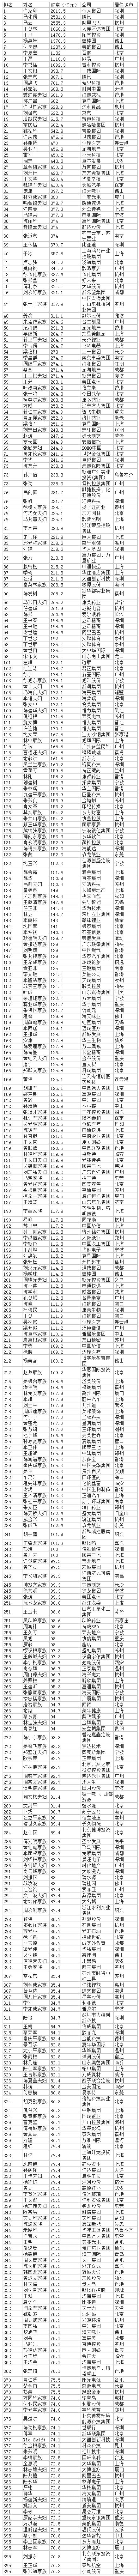 福布斯中国富豪榜TOP400公布 财富格局发生惊人变化